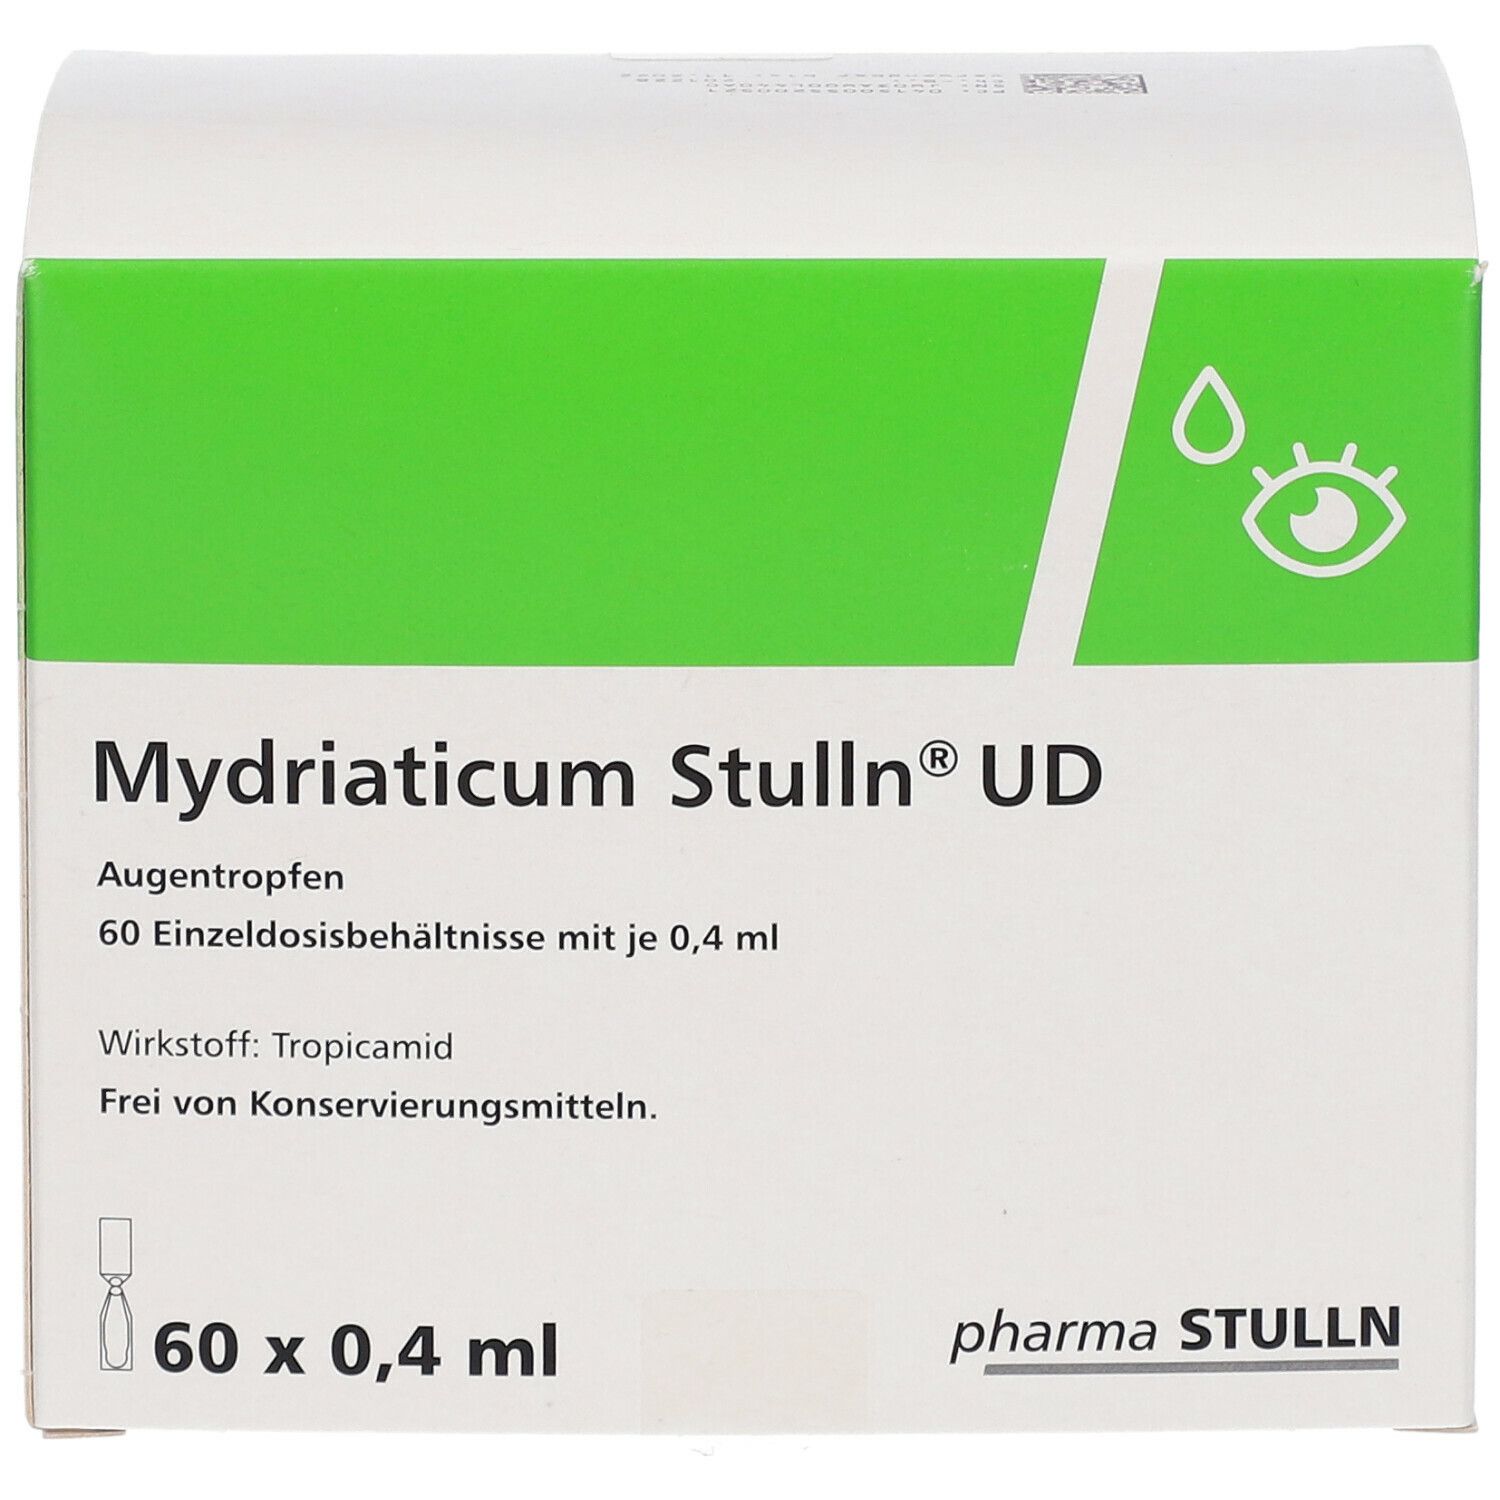 Mydriaticum Stulln® UD